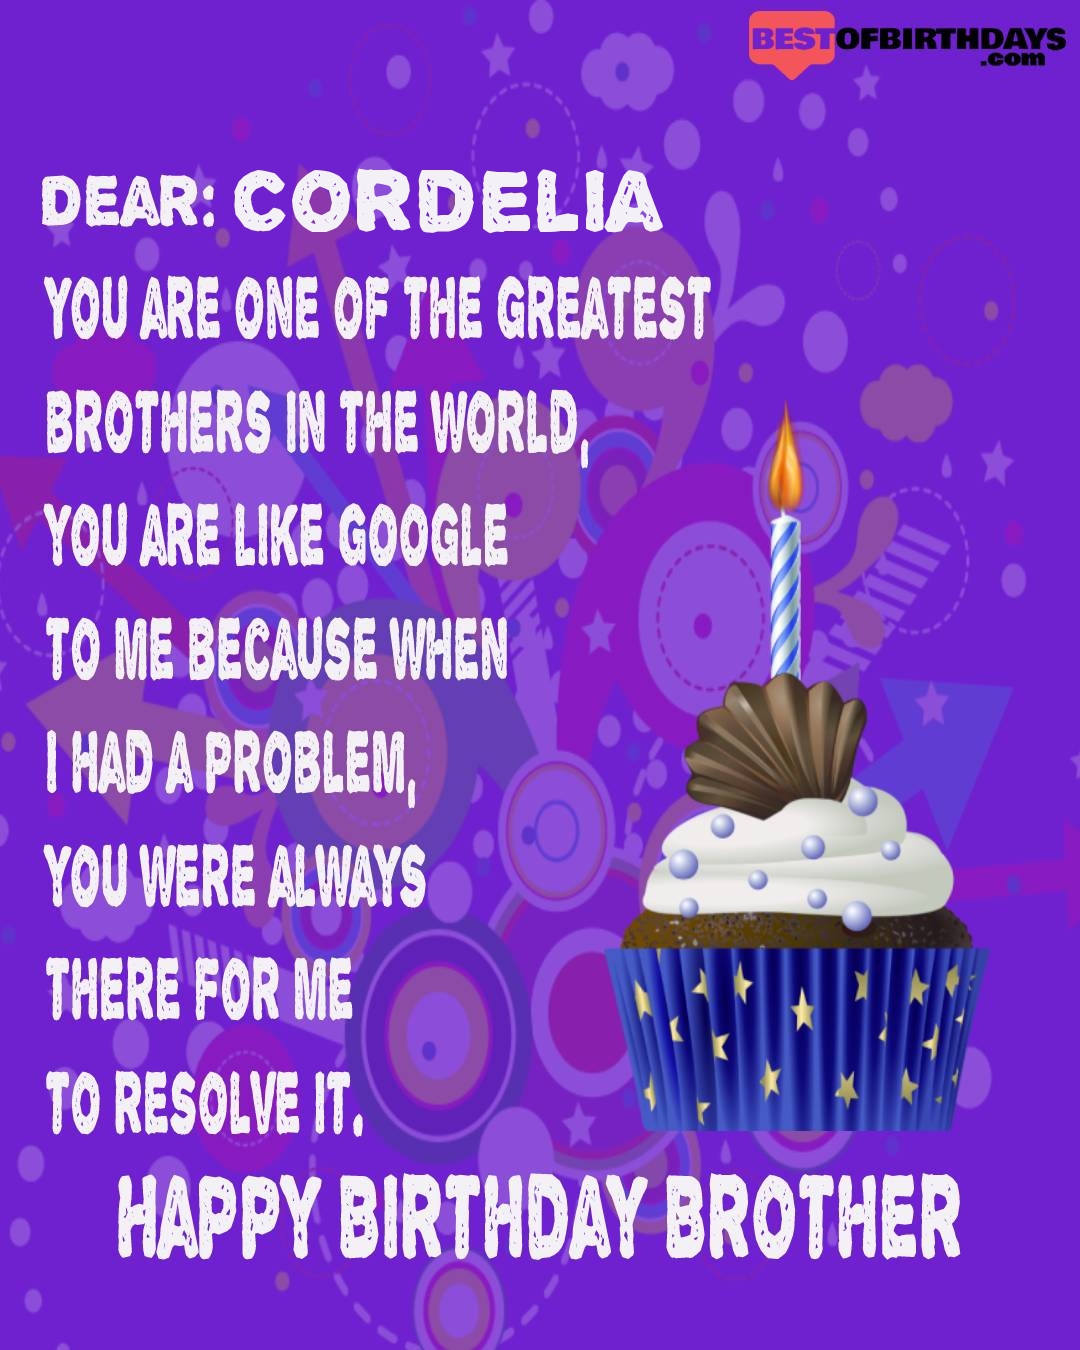 Happy birthday cordelia bhai brother bro